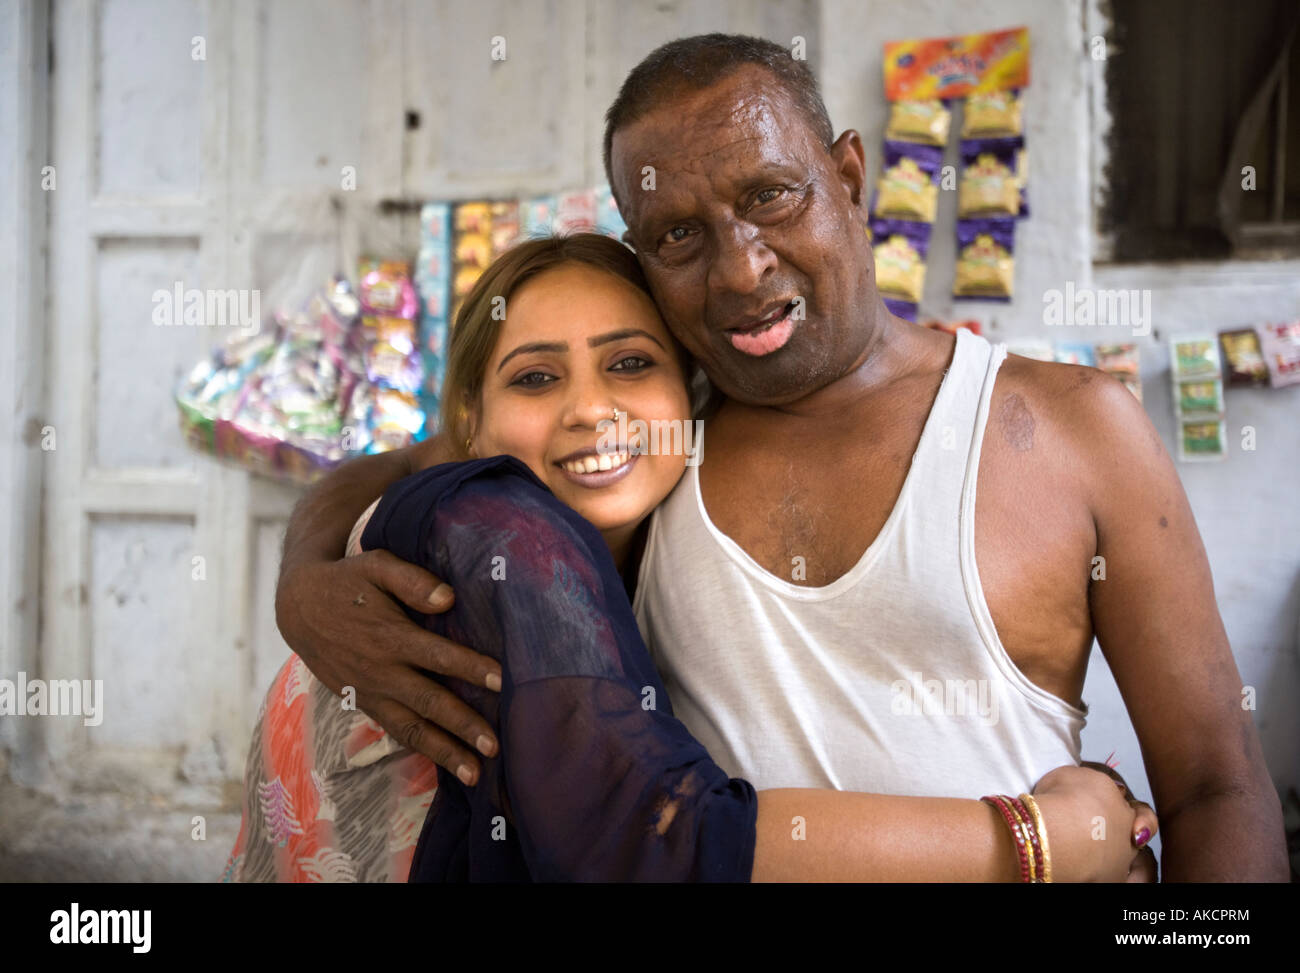 Un uomo indiano con un trattamento del viso difigurement Foto Stock